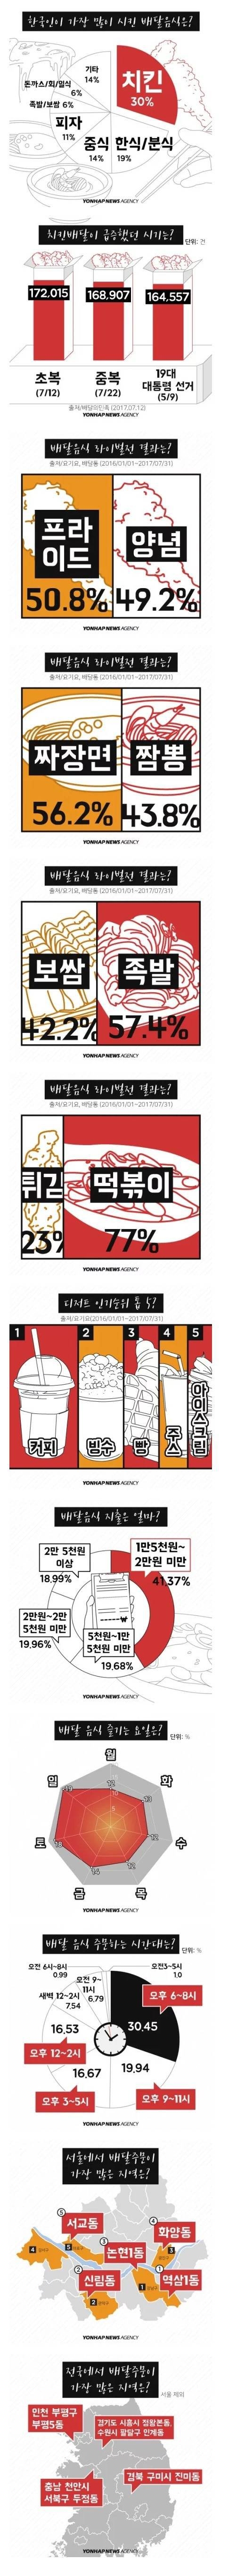 한국인이 가장 많이 시키는 배달 음식.jpg.jpg